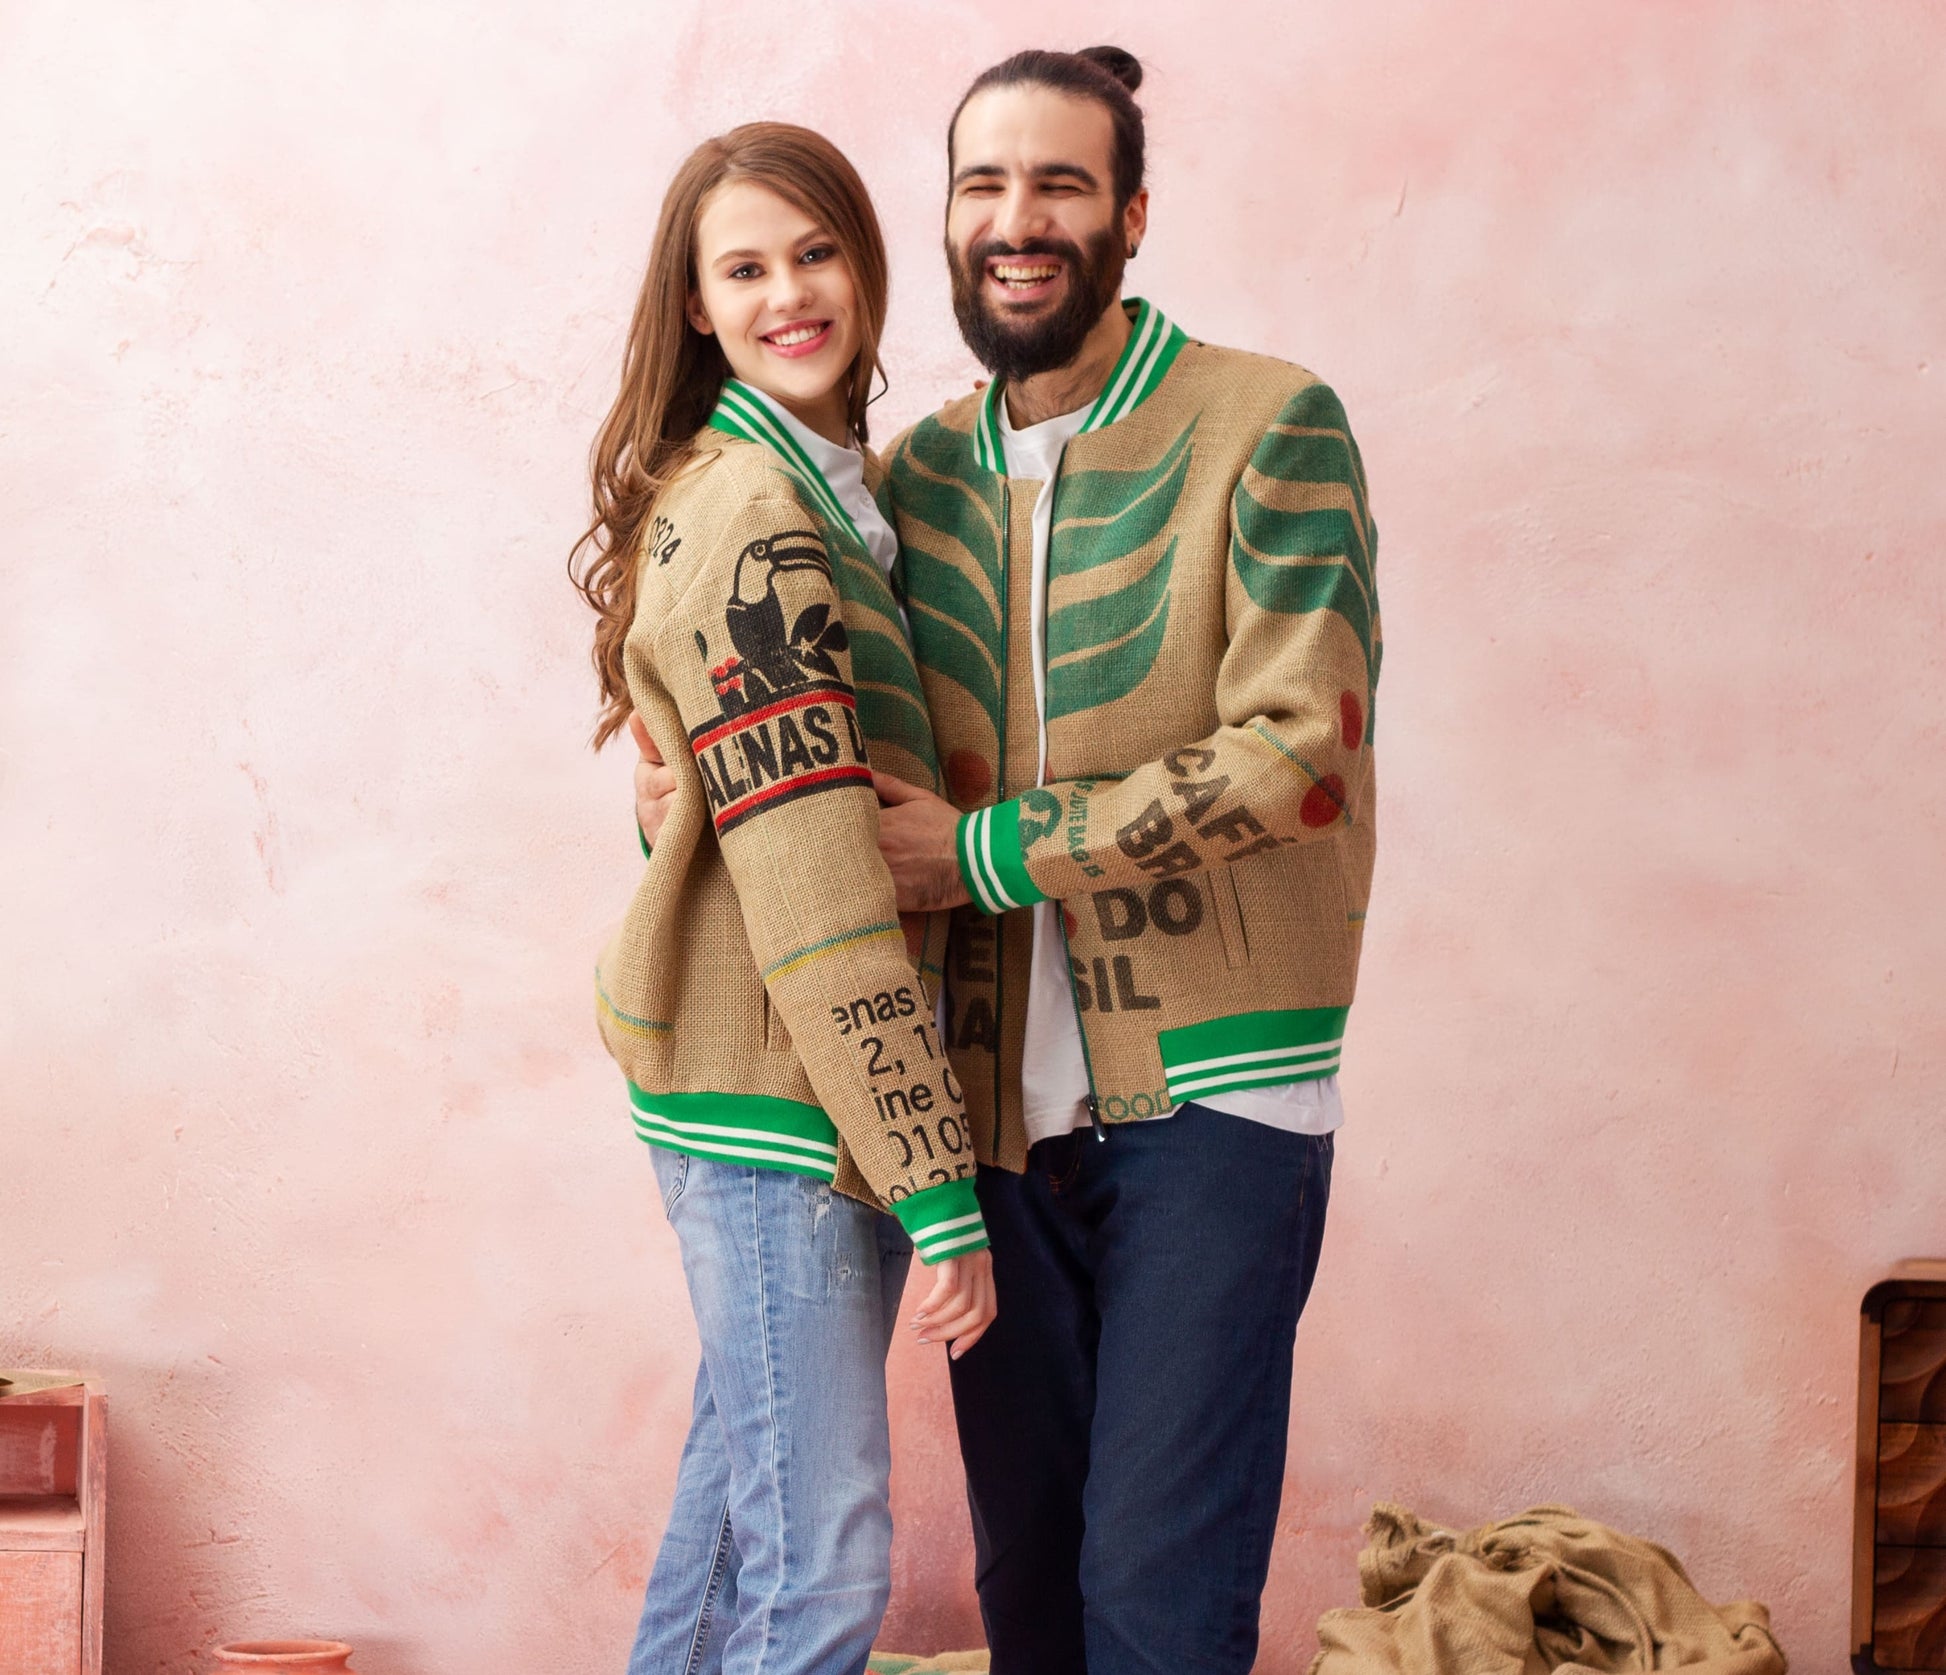 Ein Mode-Unikat von The Coffee Jacket® für ihn und sie, das den grünen Lebensstil und den Sinn für Stil schick hervorheben soll